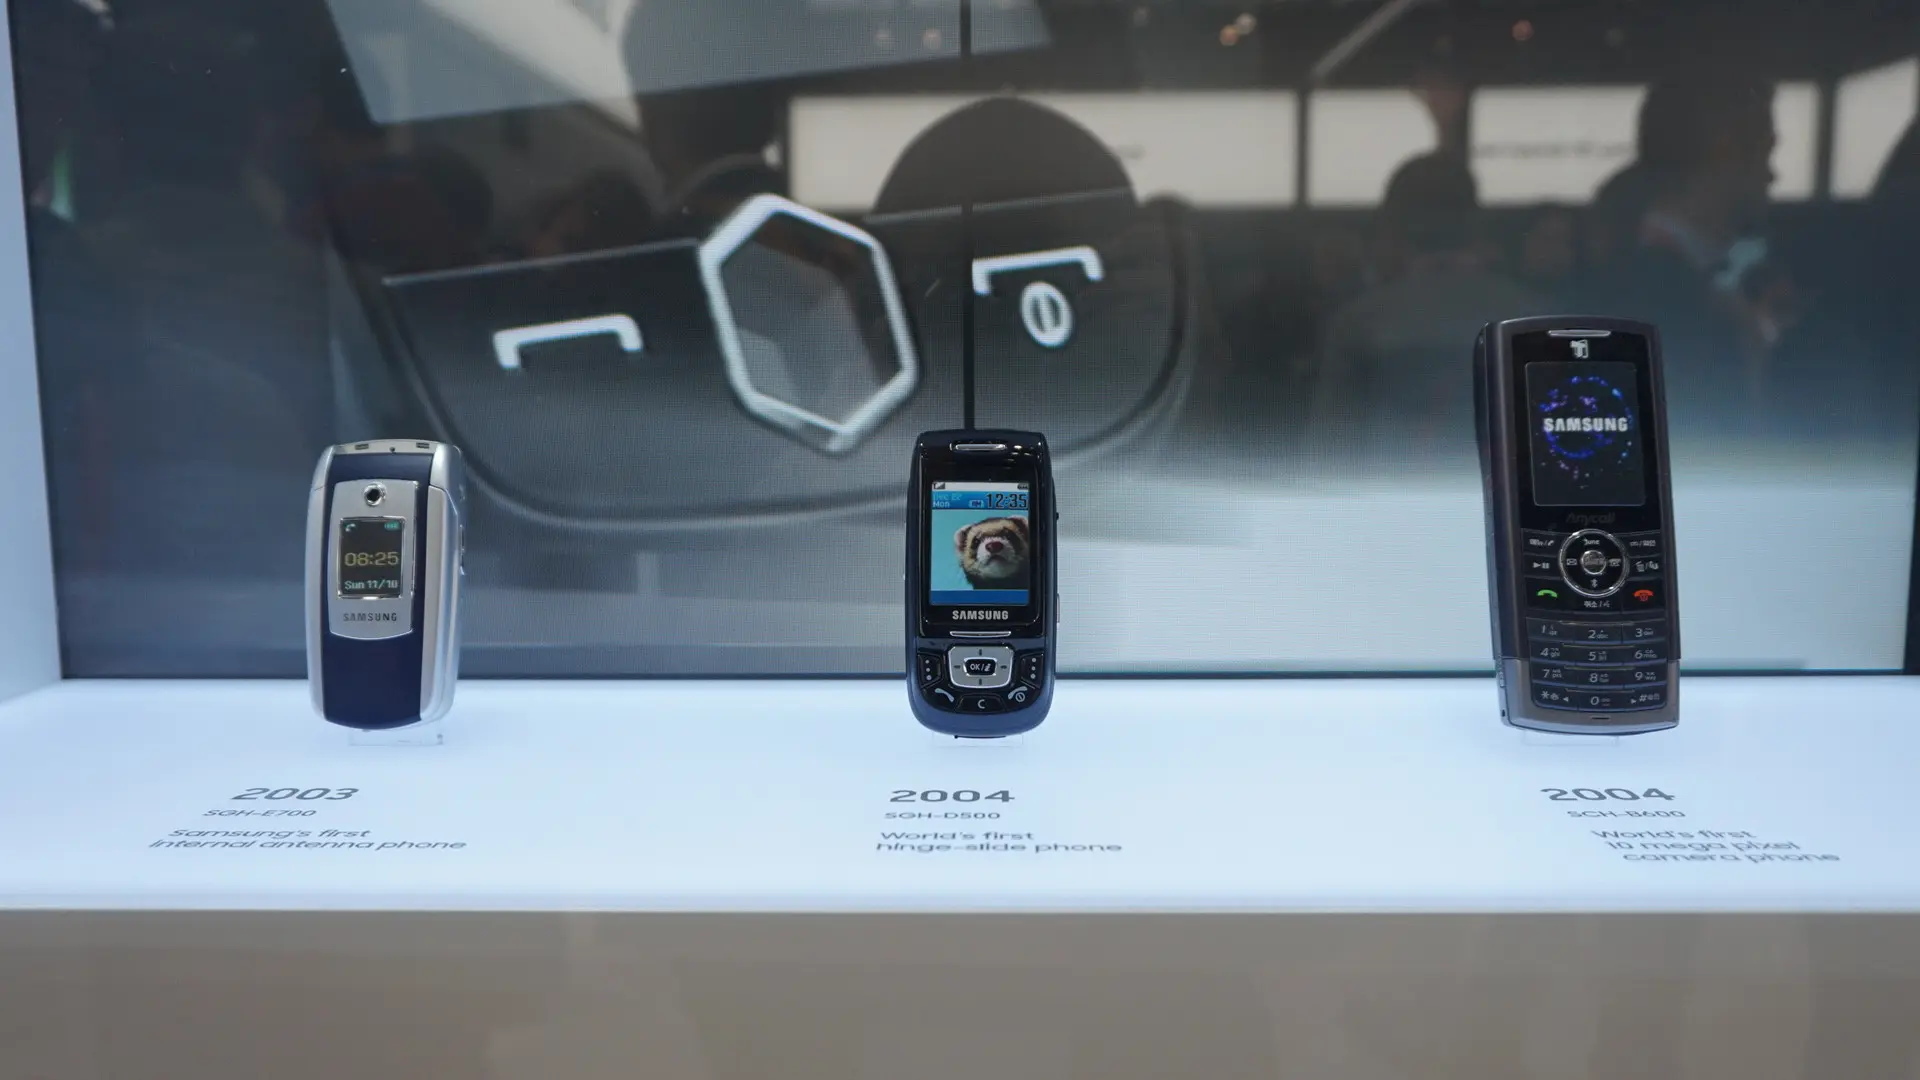 Samsung juga memamerkan smartphones lawasnya yang memiliki nilai sejarah untuk perusahaan di gelaran MWC 2018. (Liputan6.com/ Agustin Setyo W)